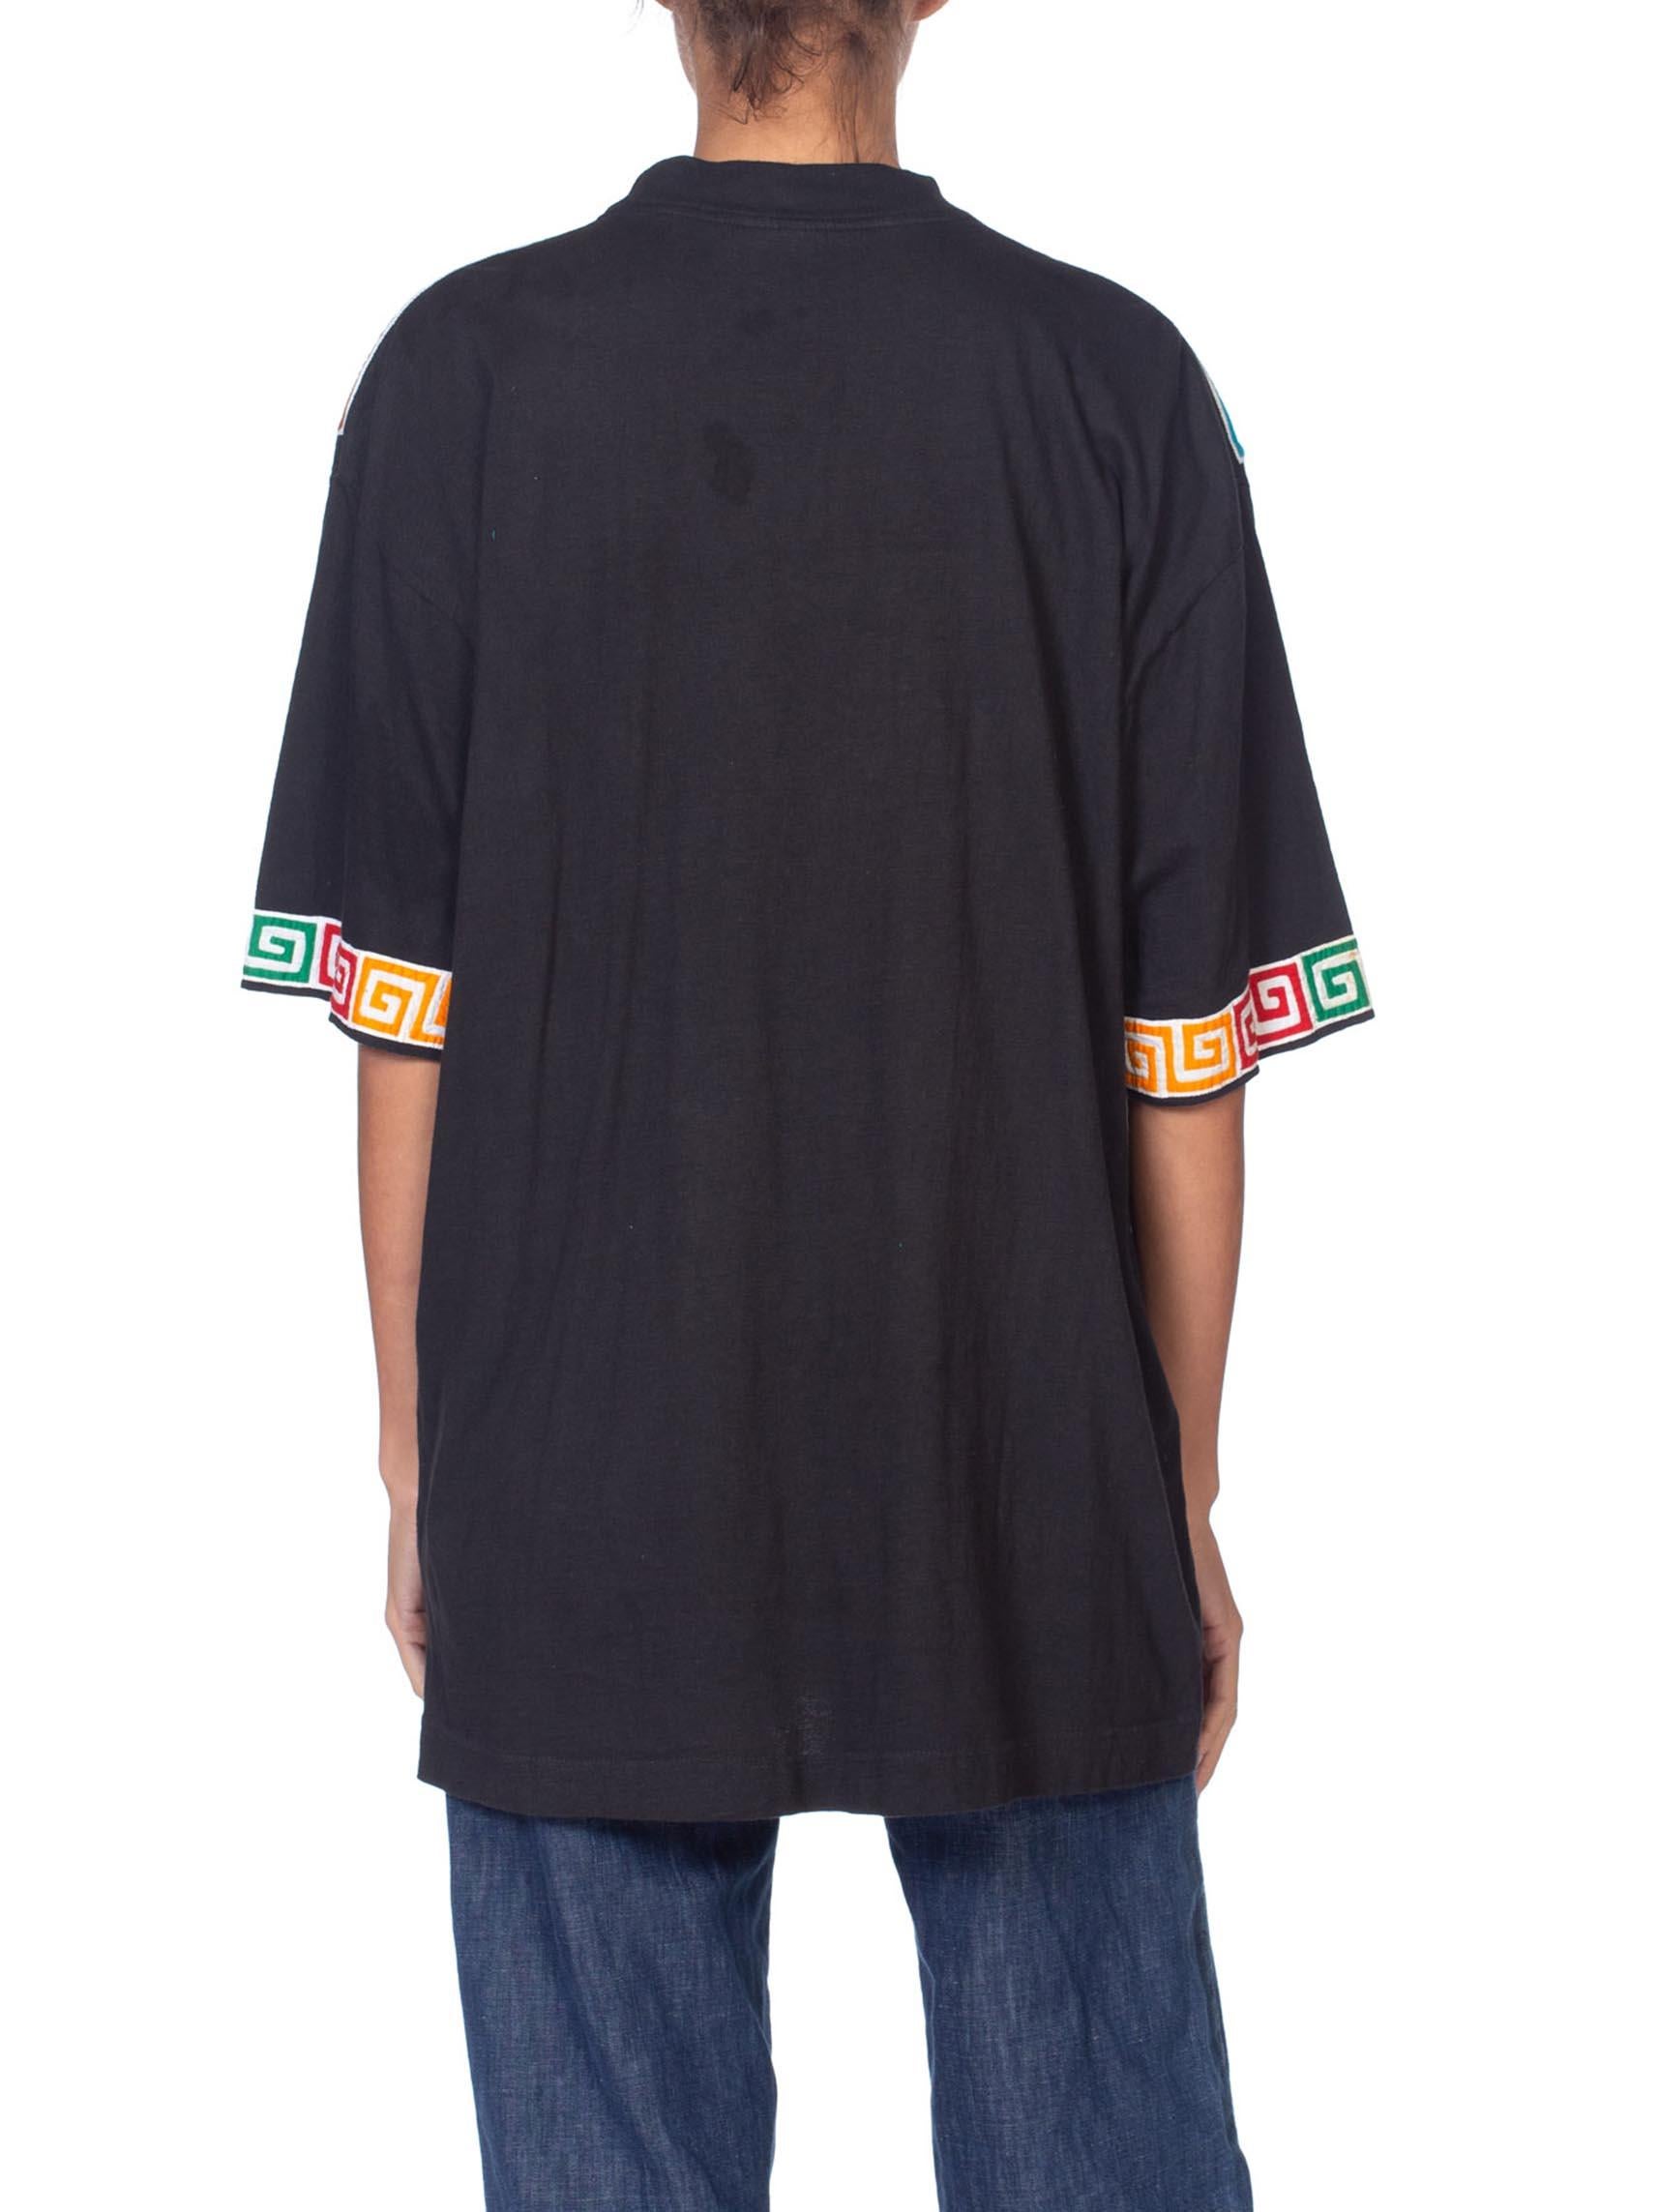 1980S Black Cotton Central American Floral And Parrot Appliqué T-Shirt 4